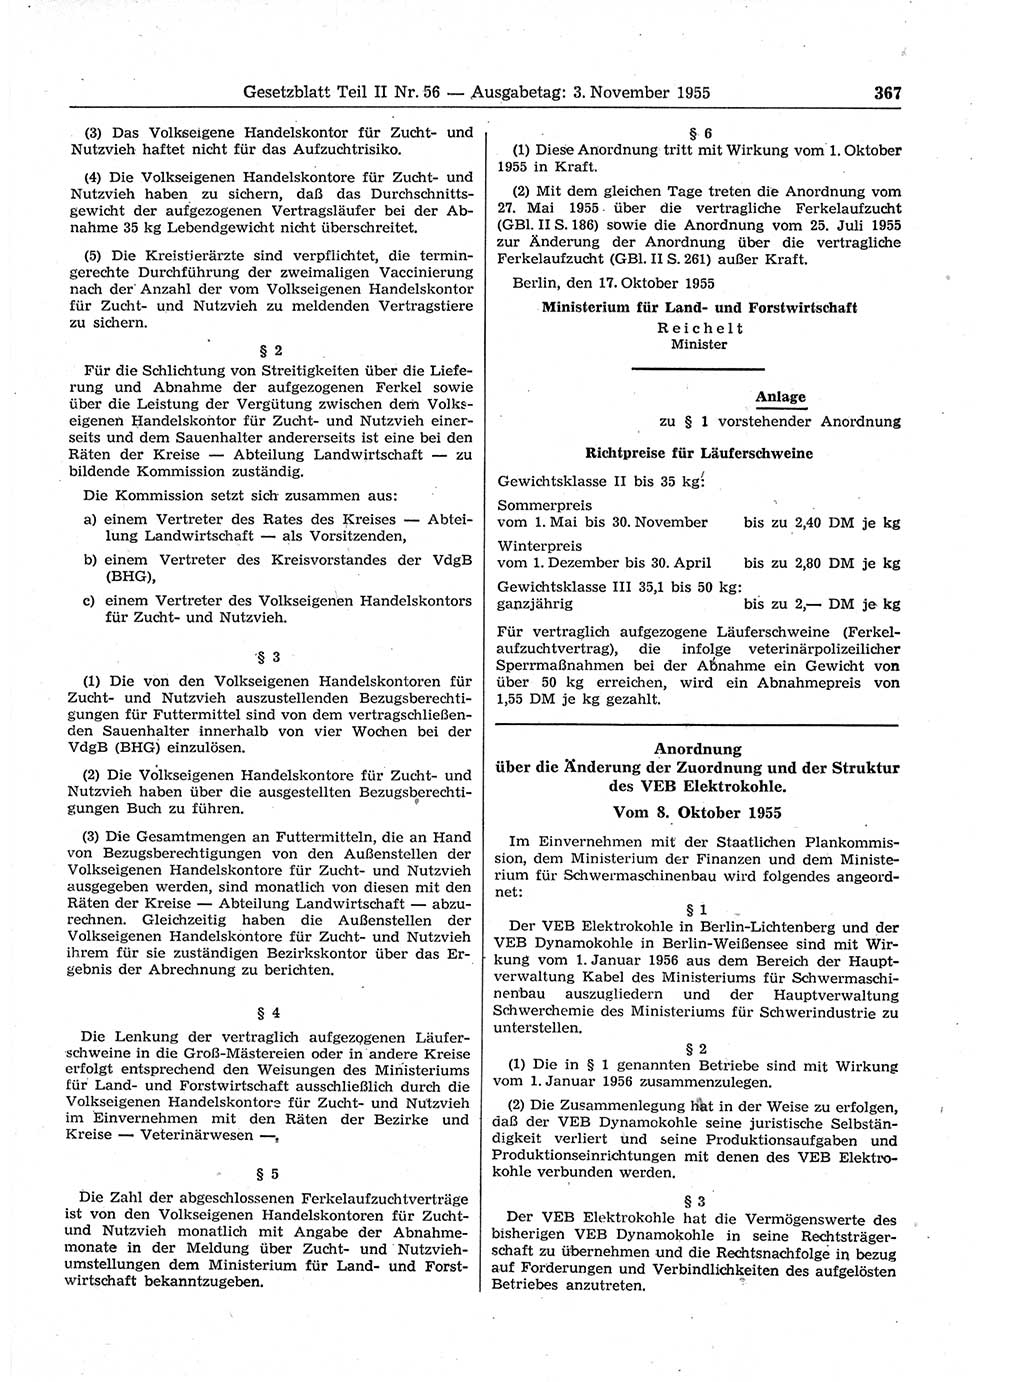 Gesetzblatt (GBl.) der Deutschen Demokratischen Republik (DDR) Teil ⅠⅠ 1955, Seite 367 (GBl. DDR ⅠⅠ 1955, S. 367)